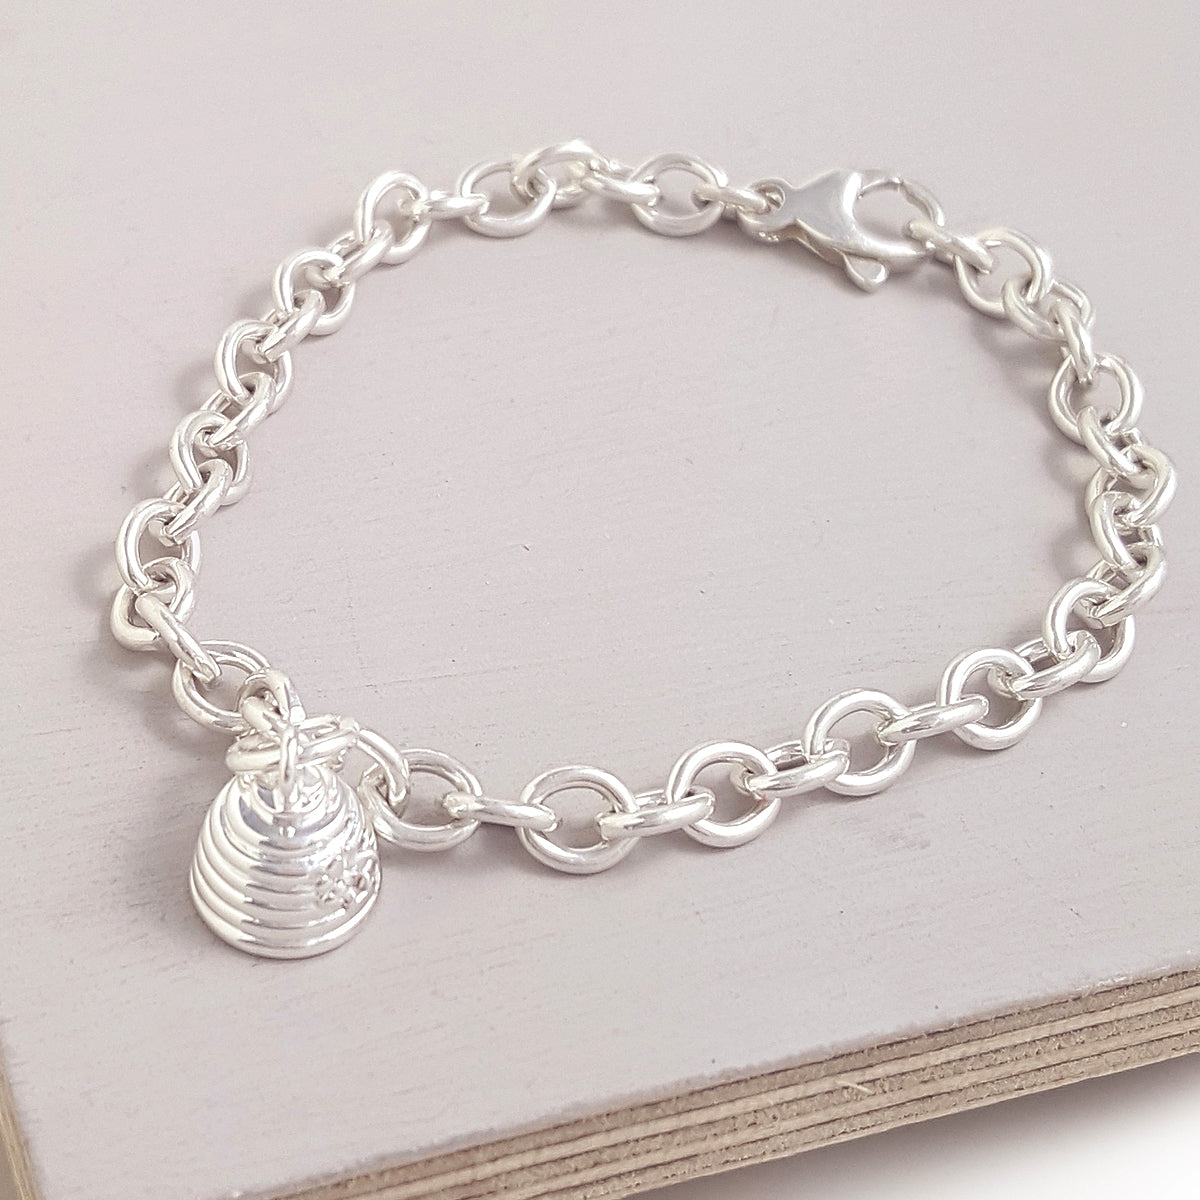 Beehive Silver Charm Bracelet from Scarlett Jewellery